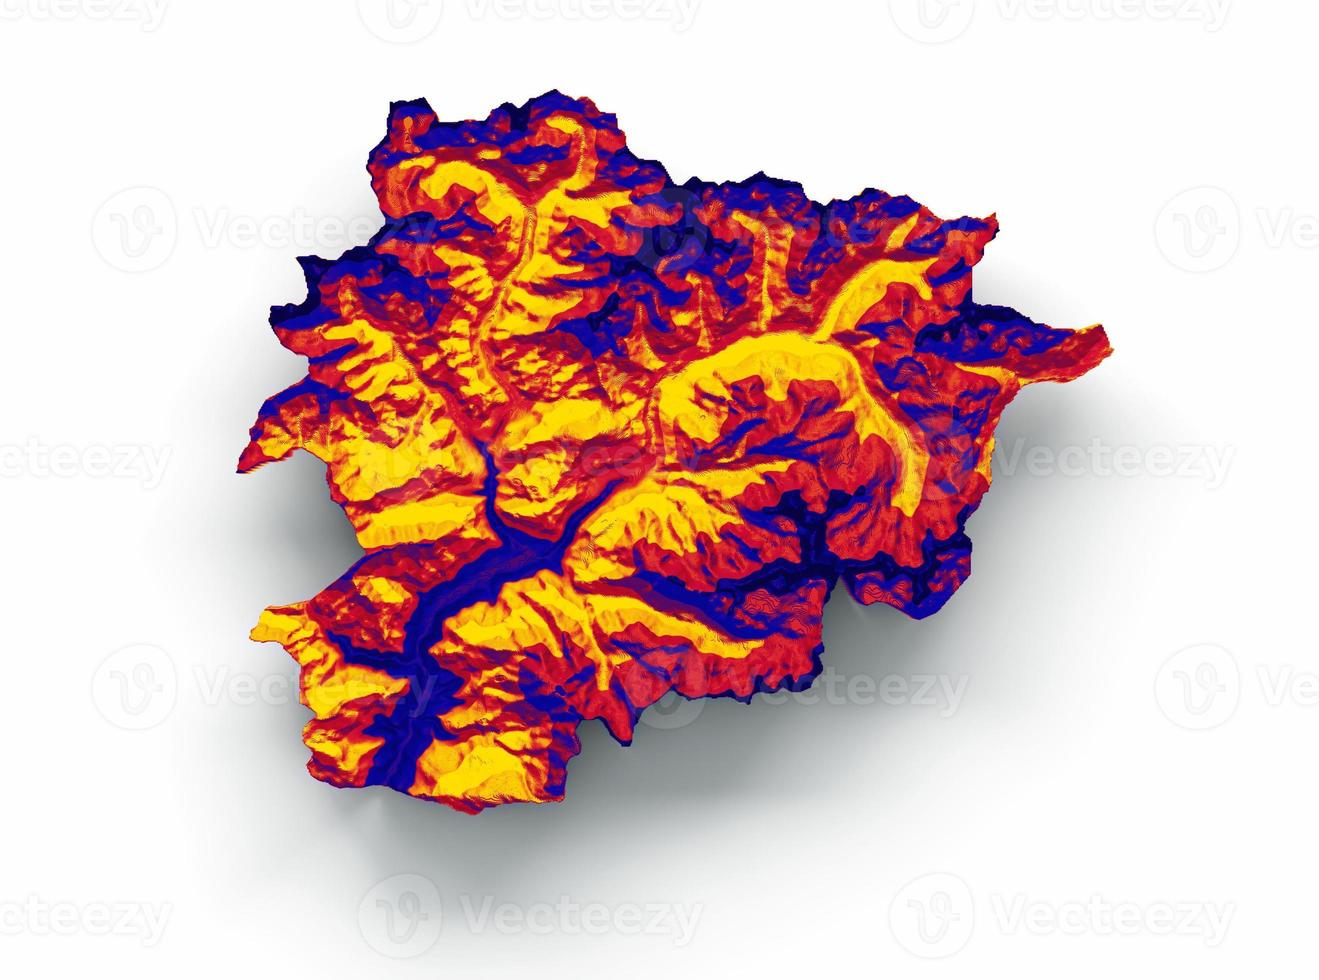 mapa de andorra con los colores de la bandera mapa en relieve sombreado rojo y amarillo ilustración 3d foto